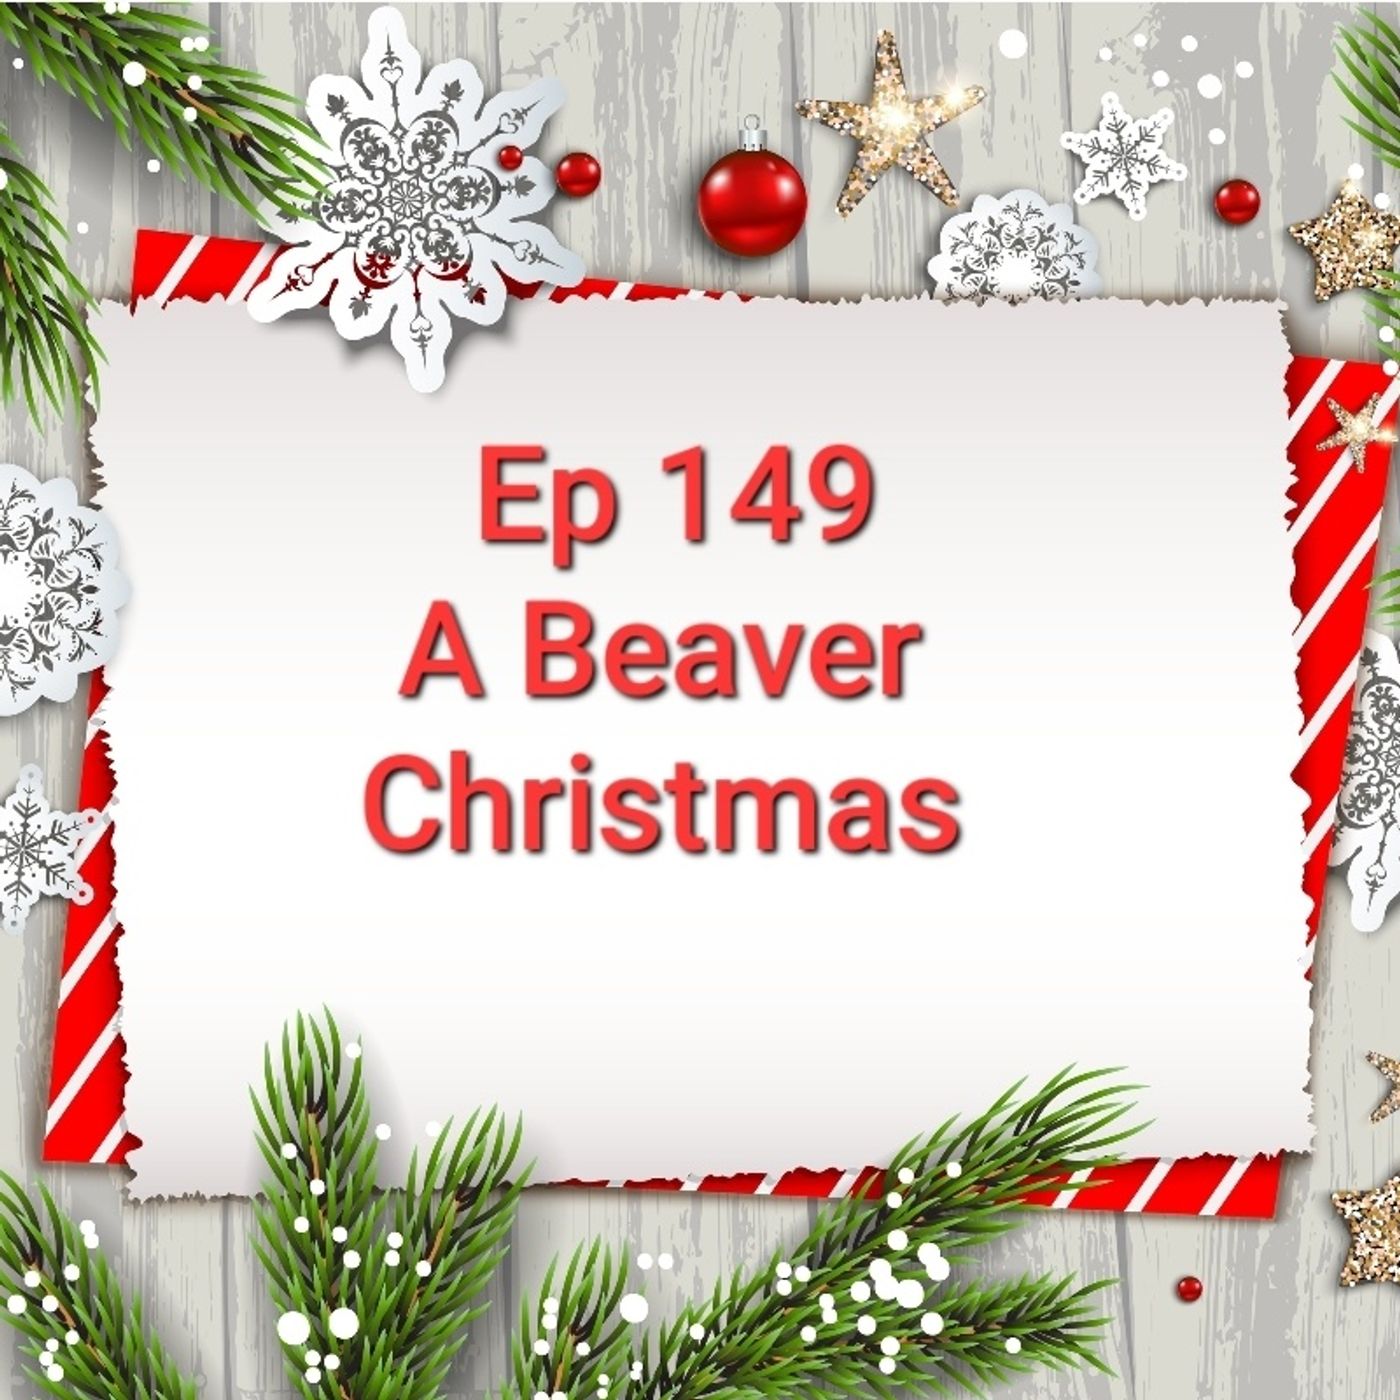 Ep 149 A Beaver Christmas